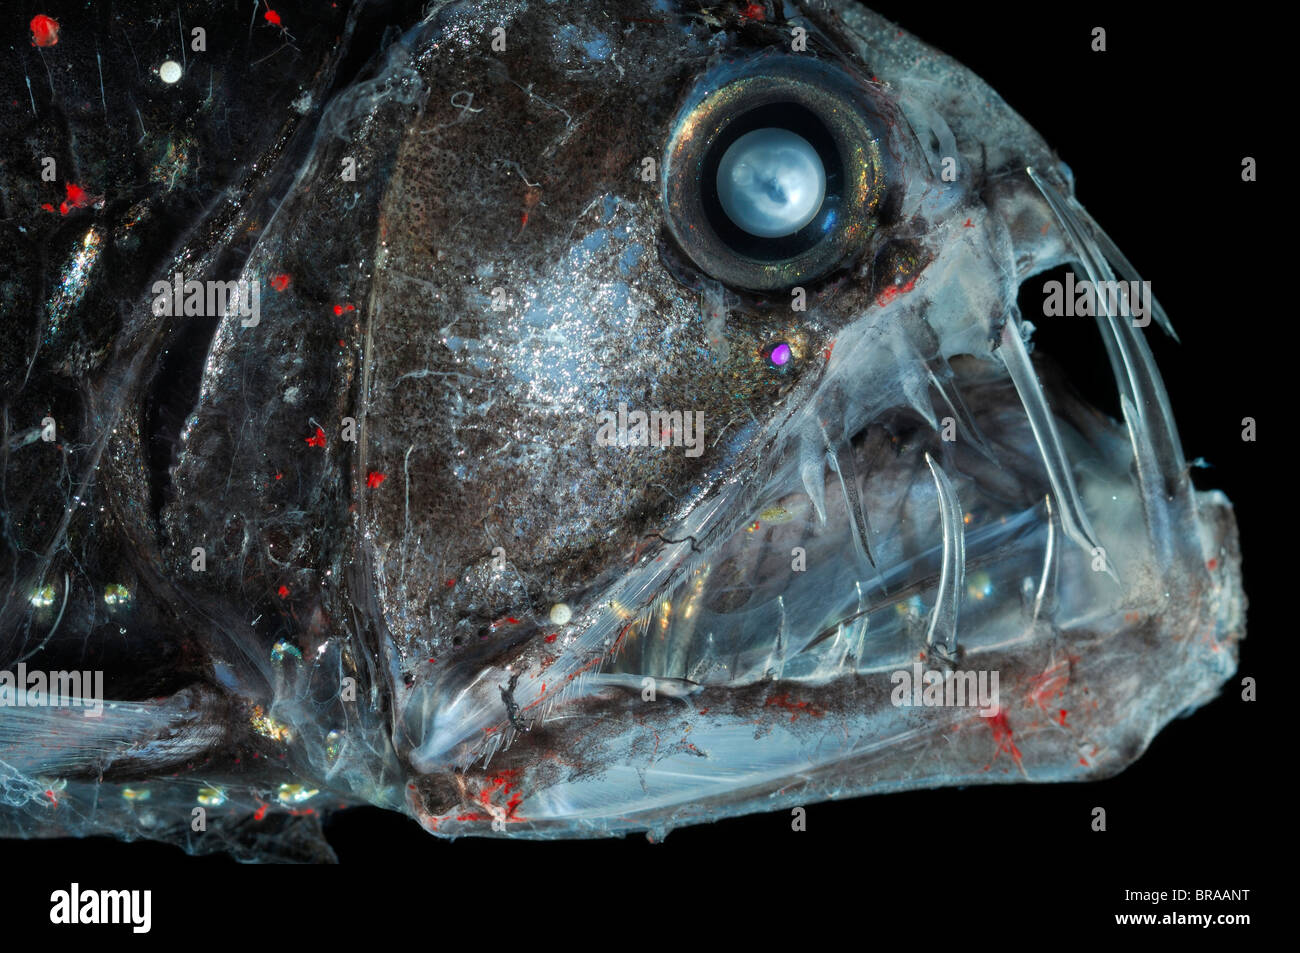 La mer profonde Chauliodus sloani Viperfish {} avec chromatophores et bioluminescence, océan Atlantique Banque D'Images